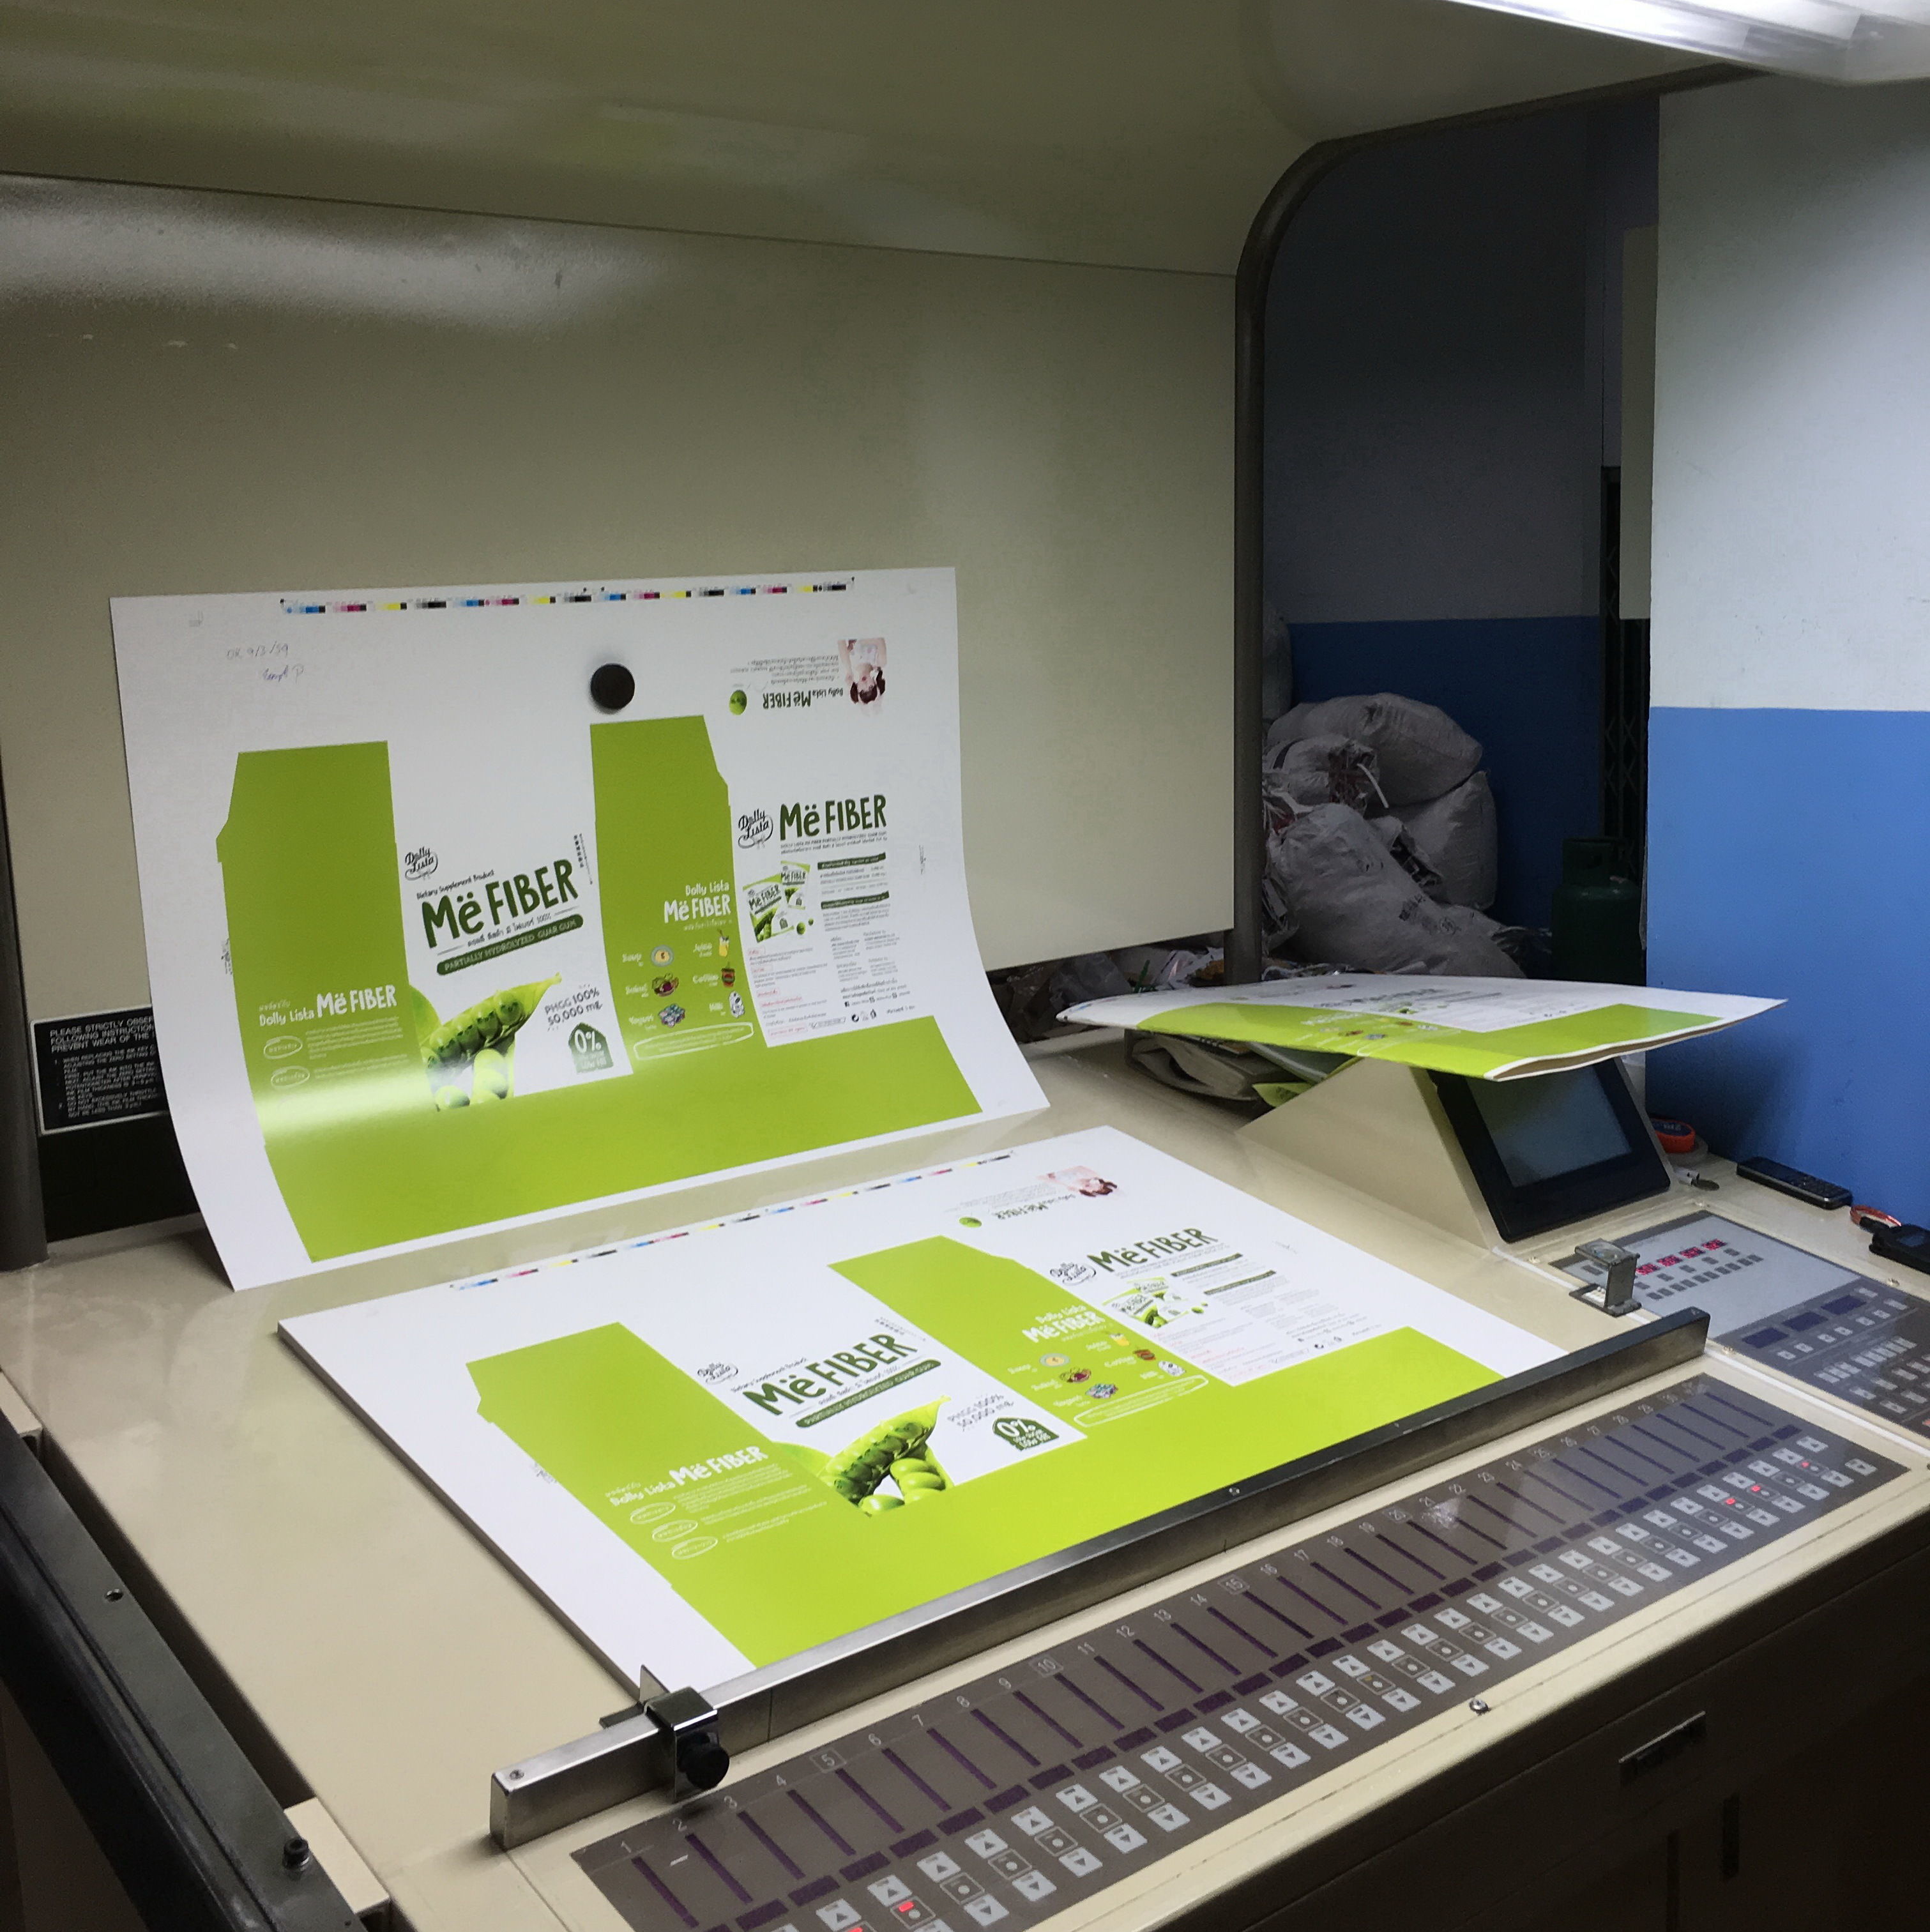 โรงพิมพ์เรามีทั้งเครื่องพิมพ์ตัวใหญ่
และเครื่องพิมพ์ตัวเล็กเพื่อไว้รองรับปริมาณงานทุกขนาด ทุกความต้องการของลูกค้า